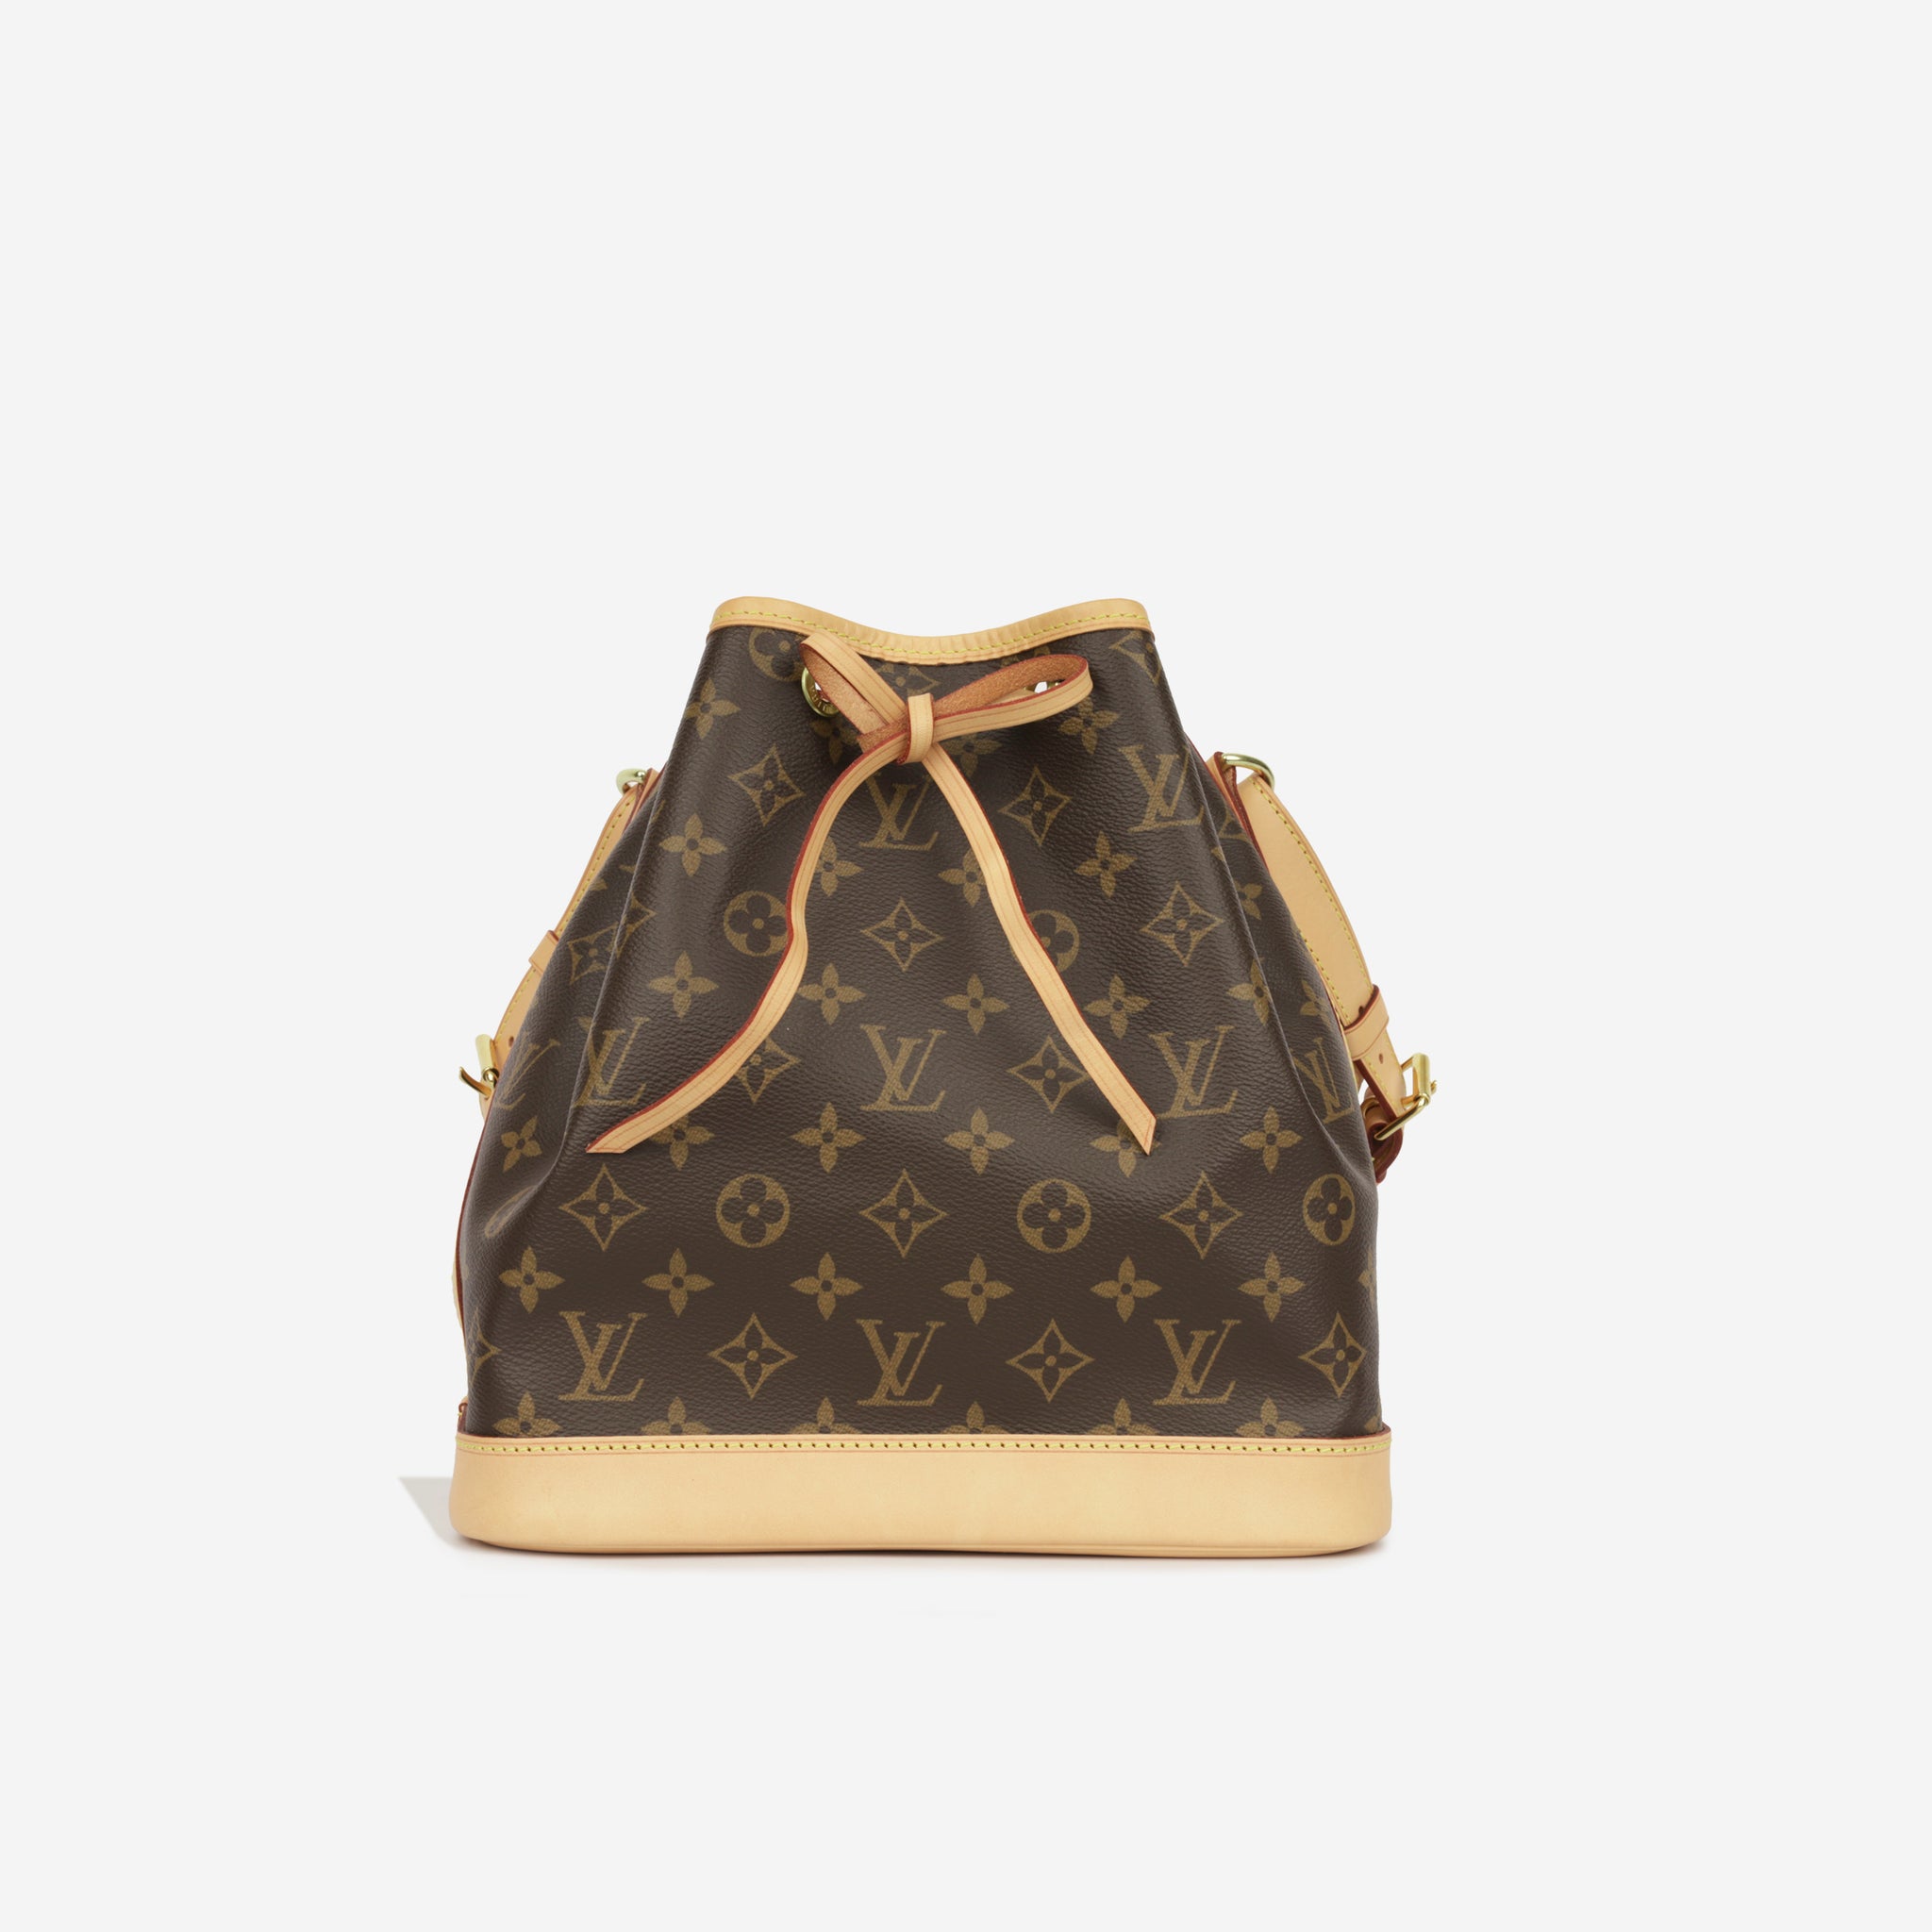 Louis Vuitton - Petit Noé Bucket Bag - Monogram - GHW